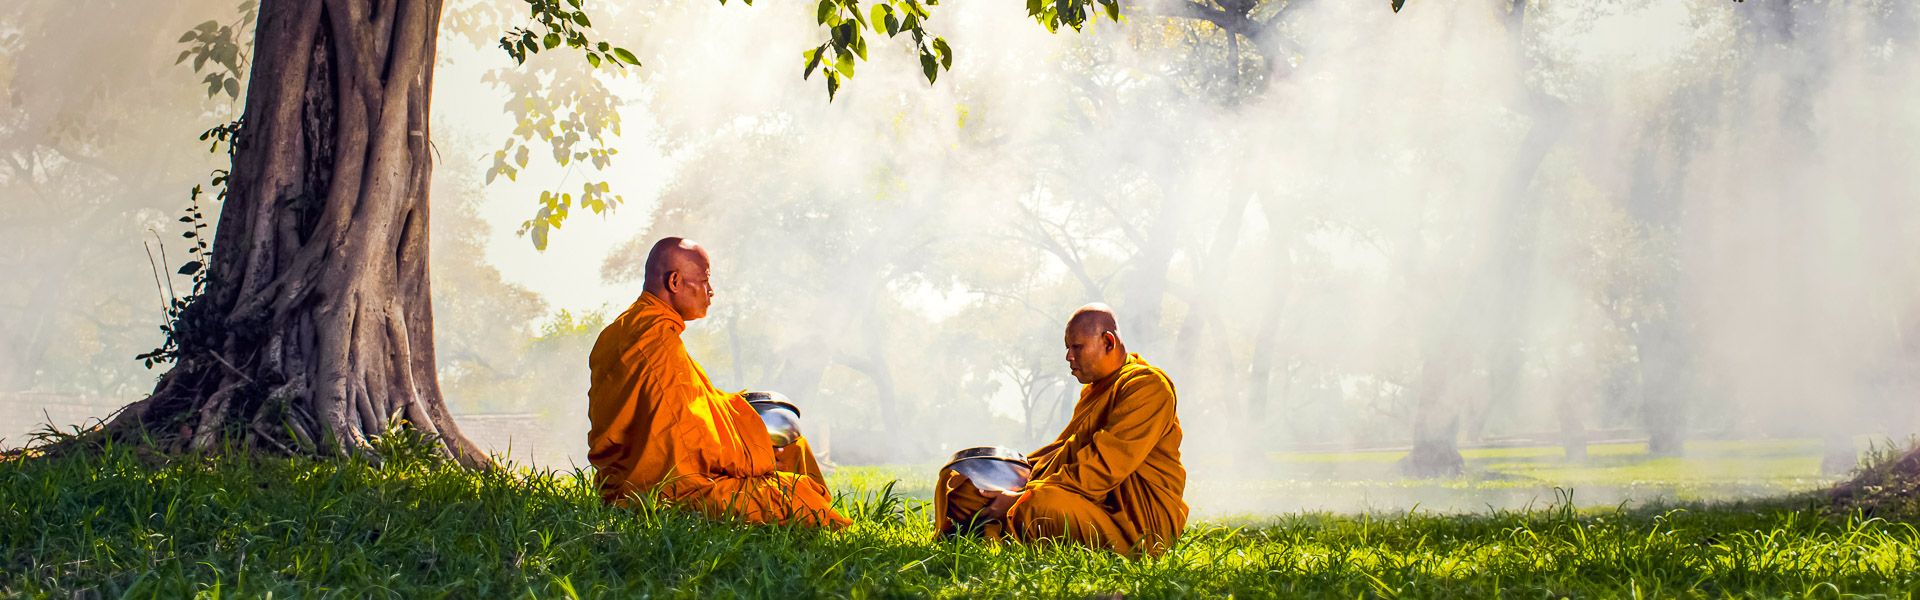 Zwei Mnche meditieren unter einem Baum |  Tzido, iStockphoto.com / Chamleon